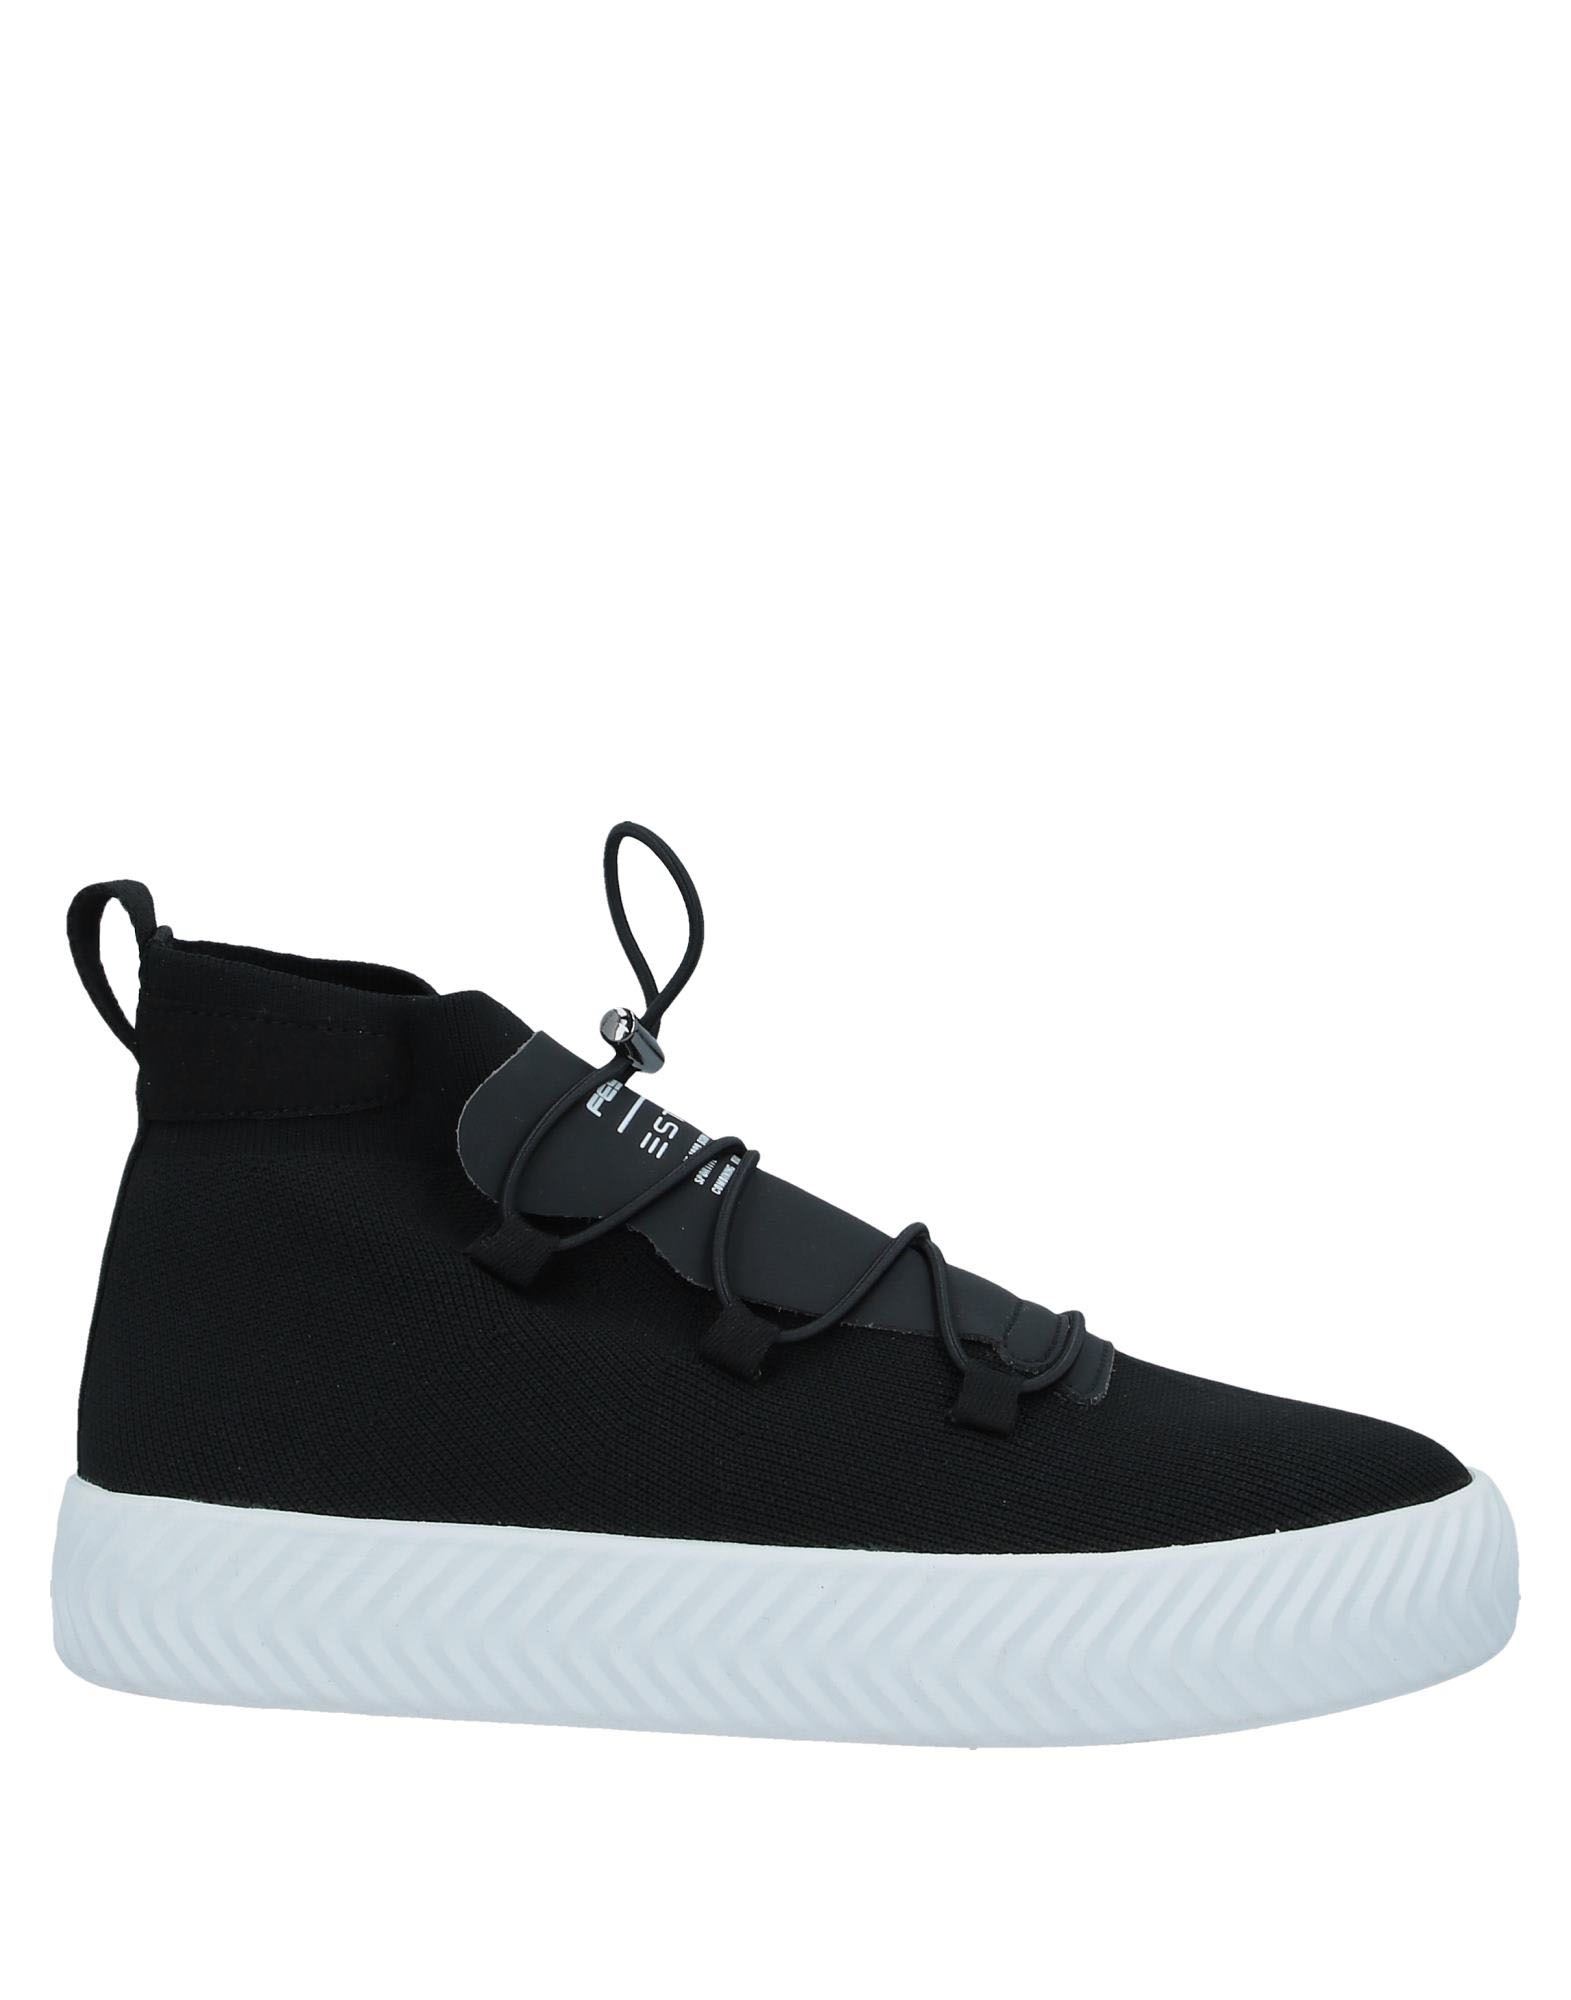 Fessura Sneakers In Black